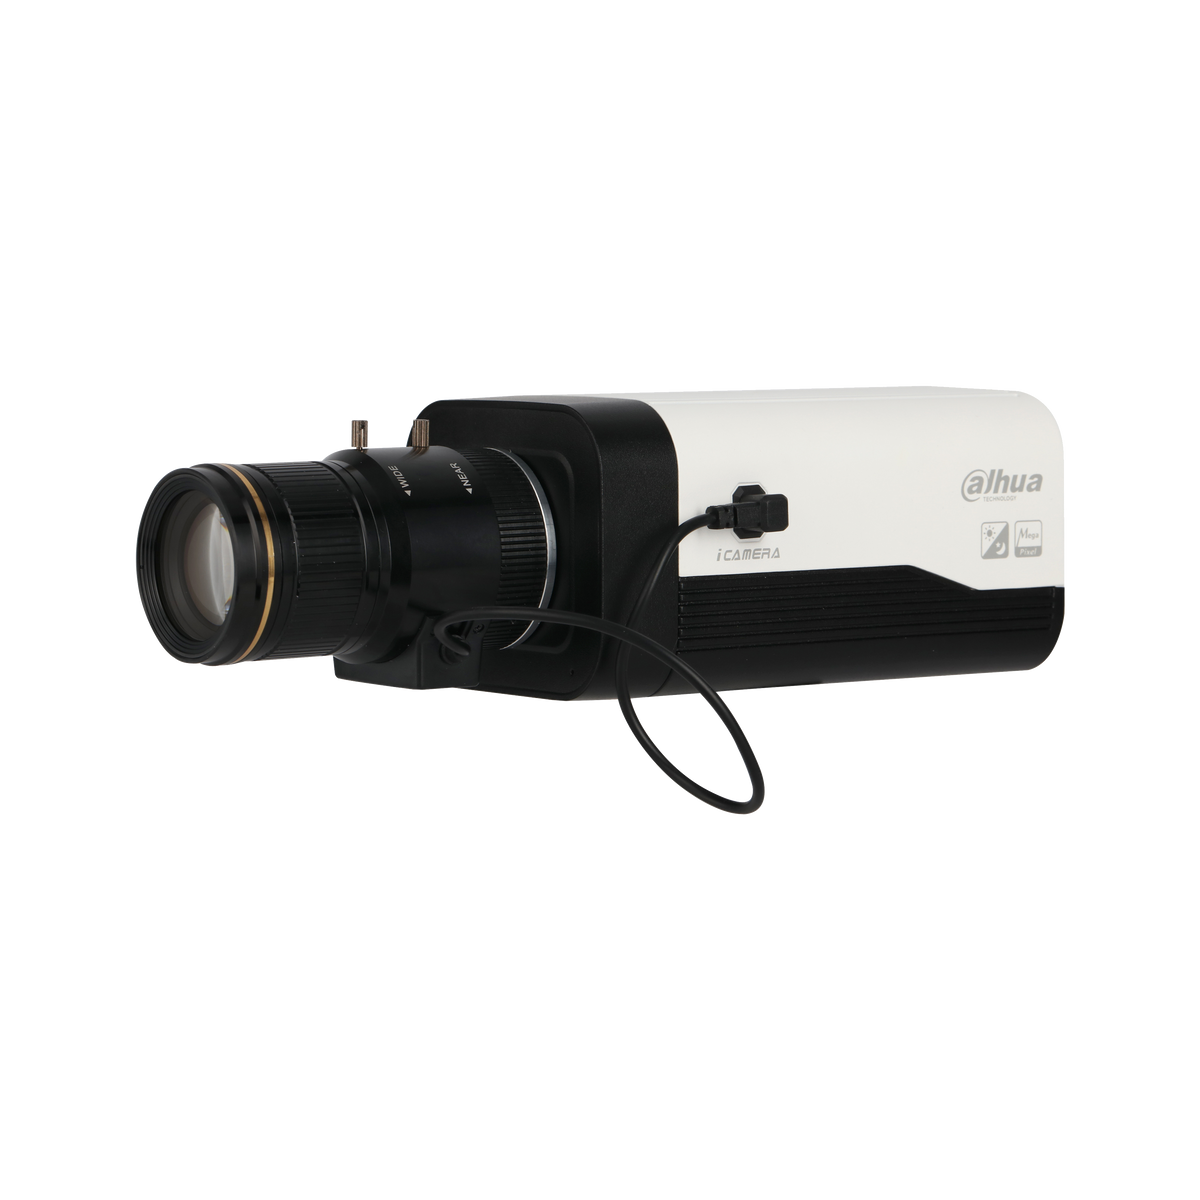 DAHUA IPC-HF8630F-E 6MP Box Network Camera